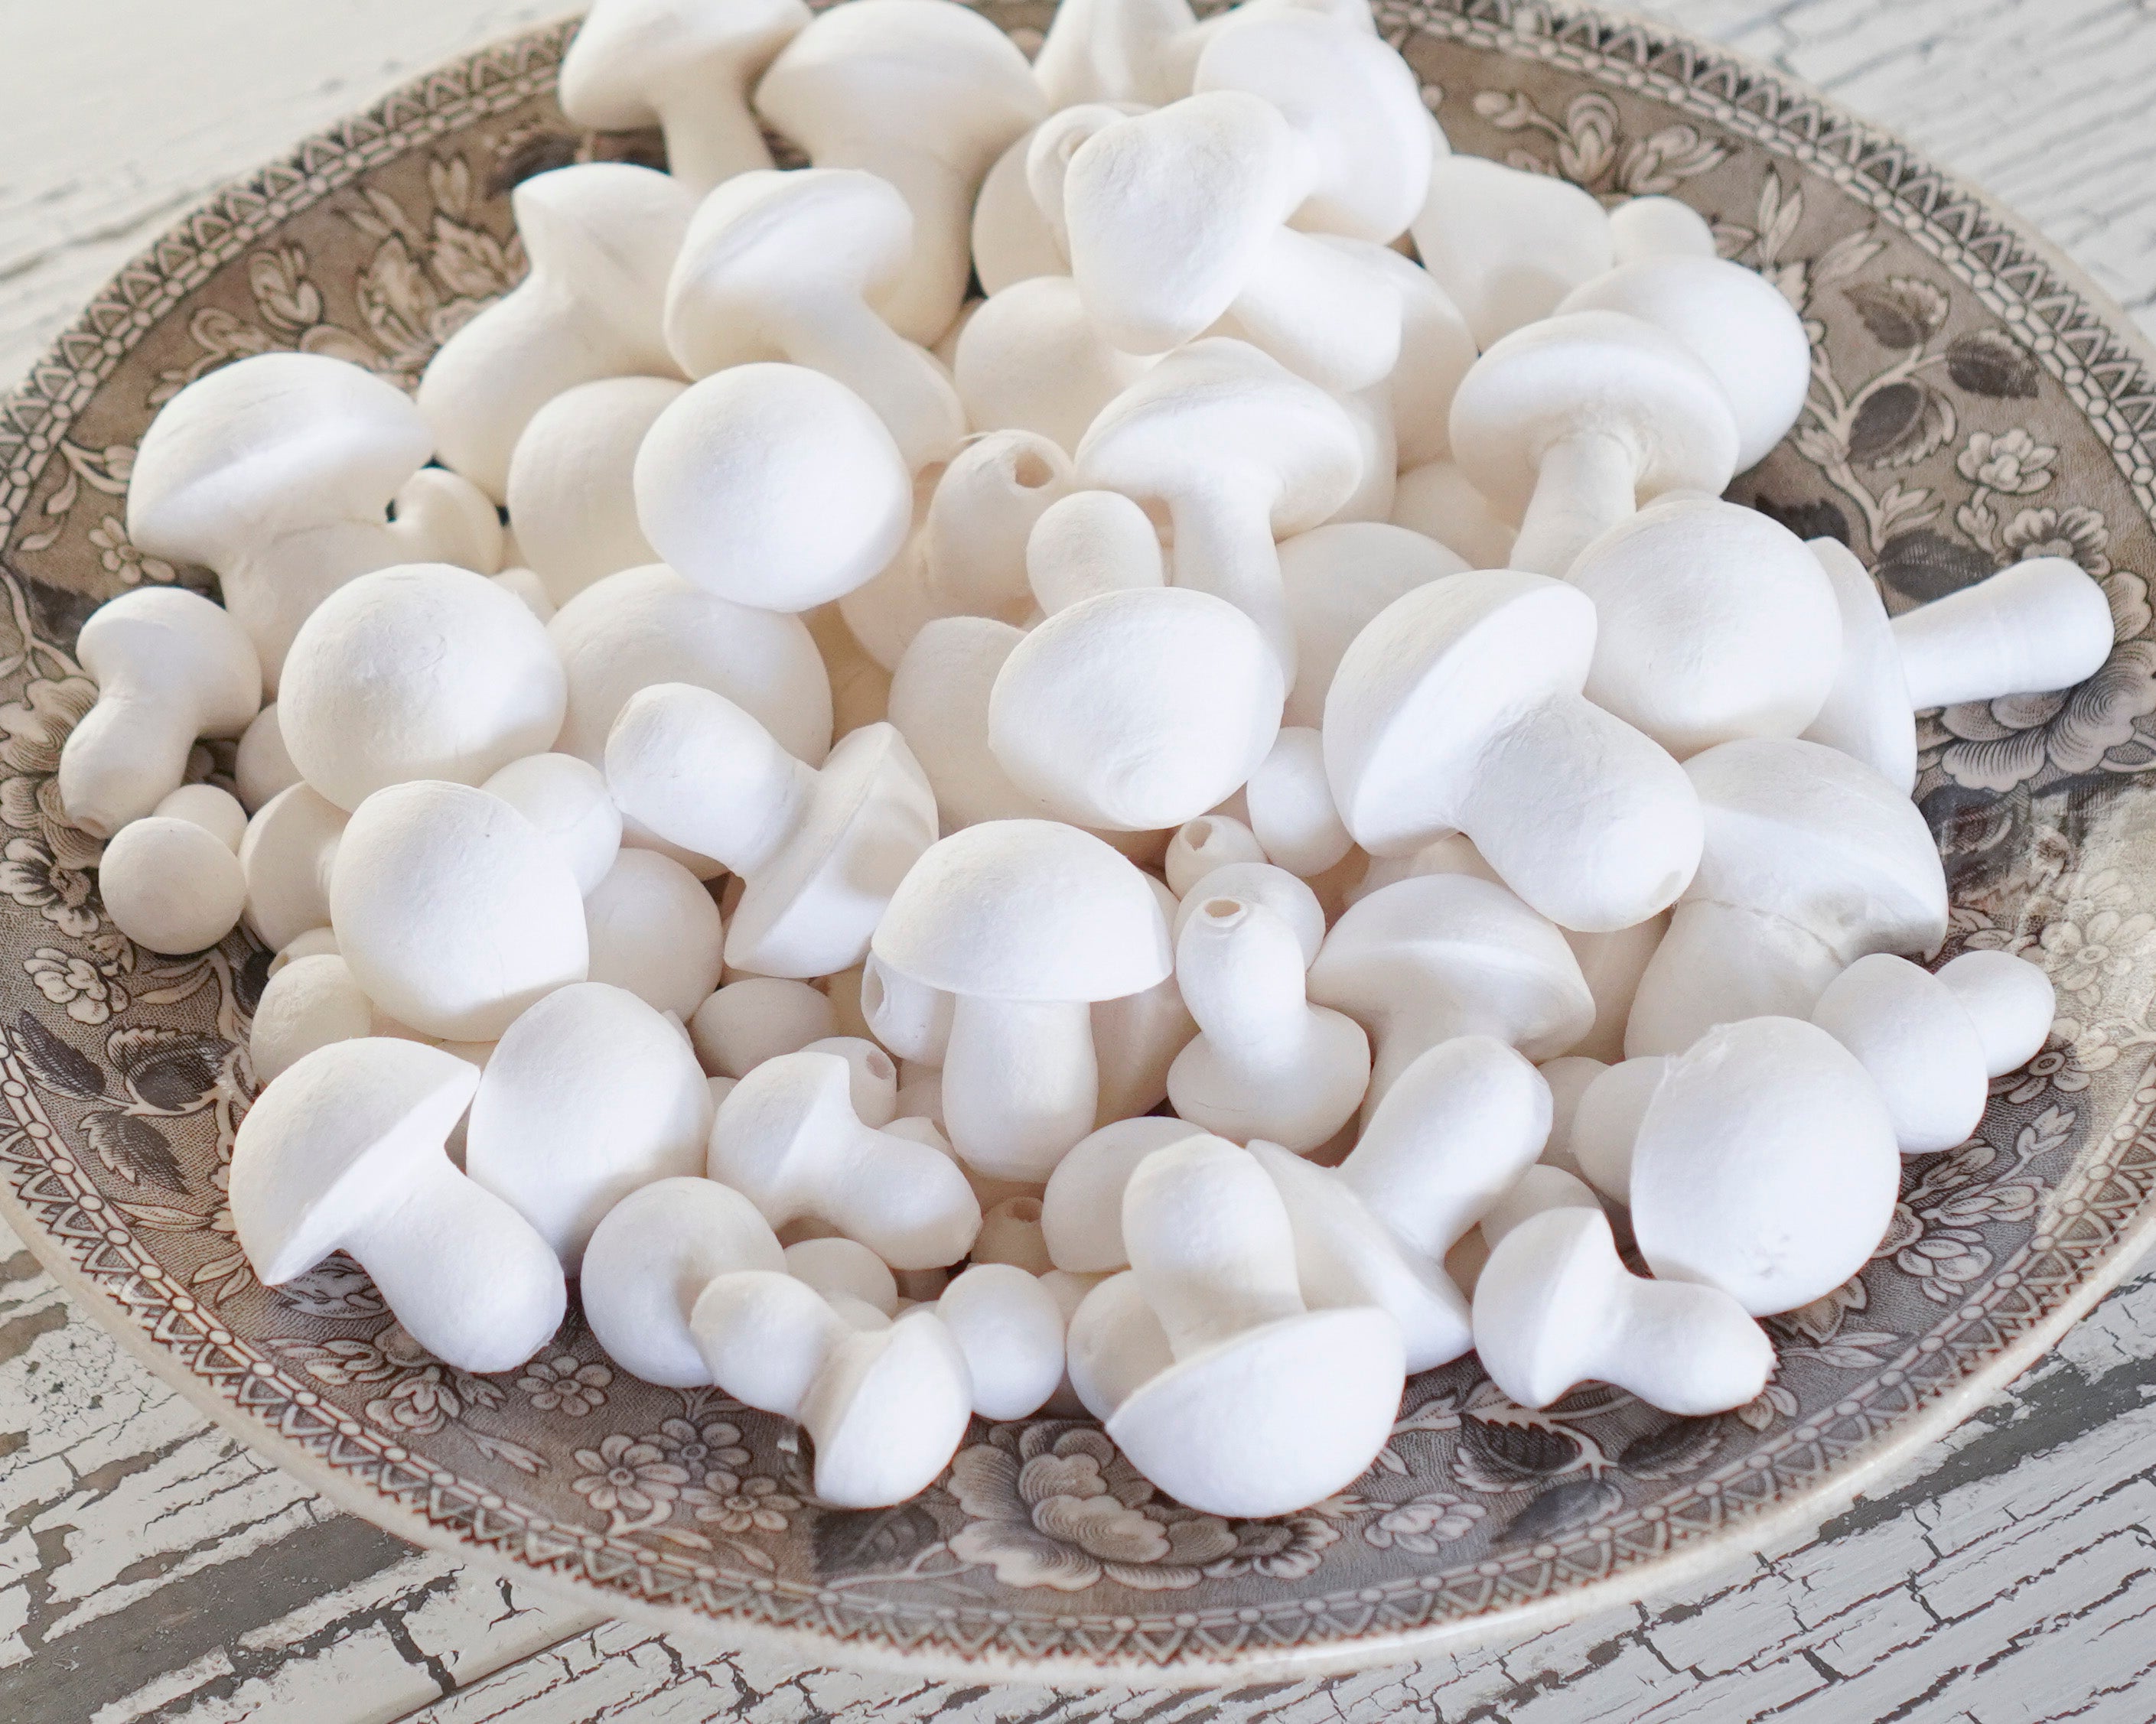 Spun Cotton Mushrooms Sampler Pack, Mixed-Size Toadstool Craft Shapes, 100 Pcs.